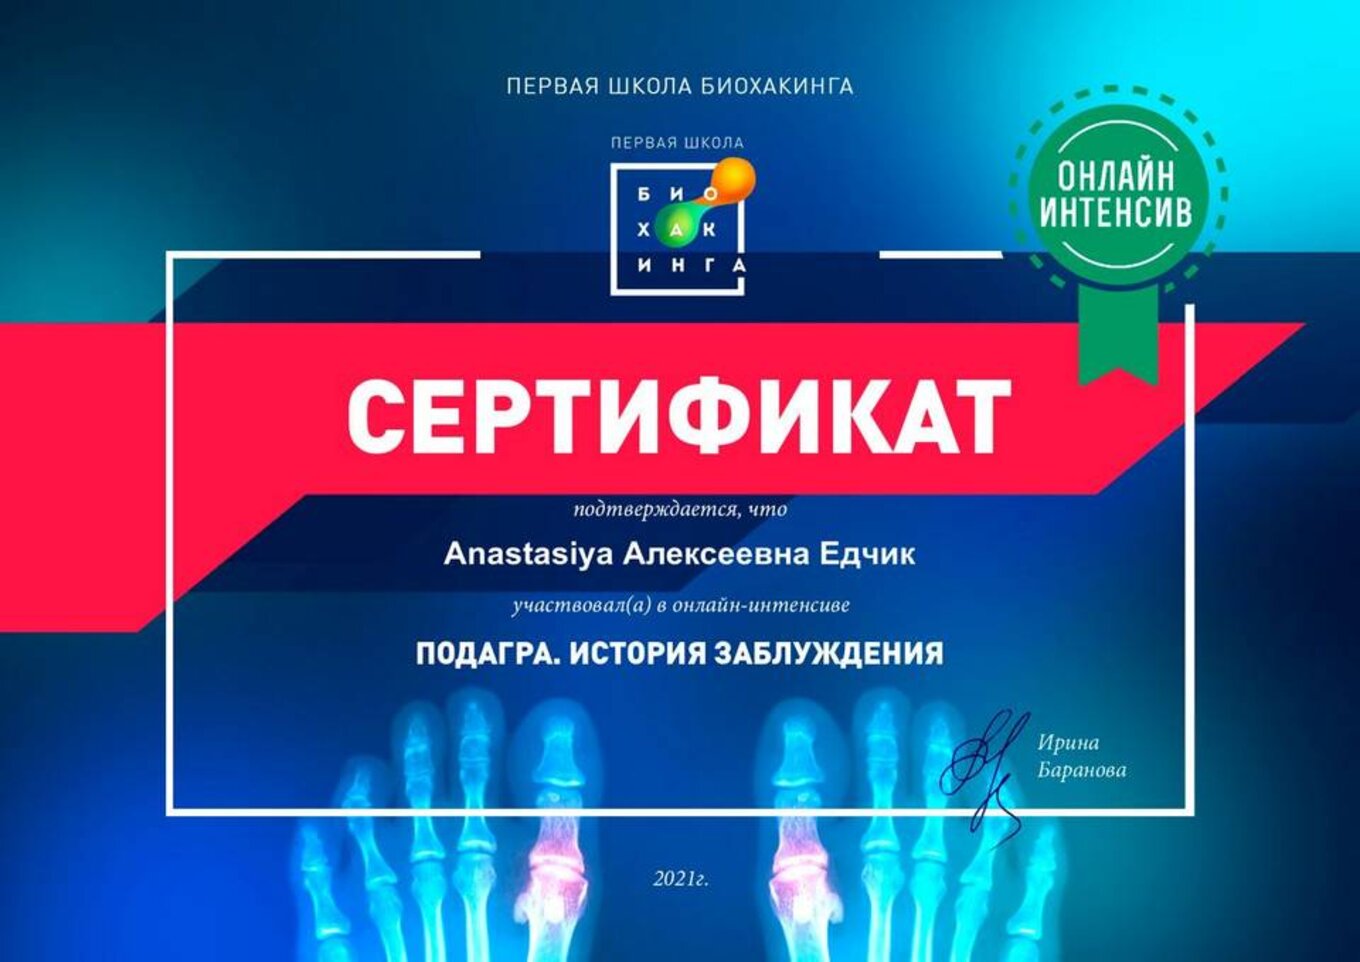 certificates/yedchik-anastasiya-oleksiyivna/erc-edchik-cert-02.jpg